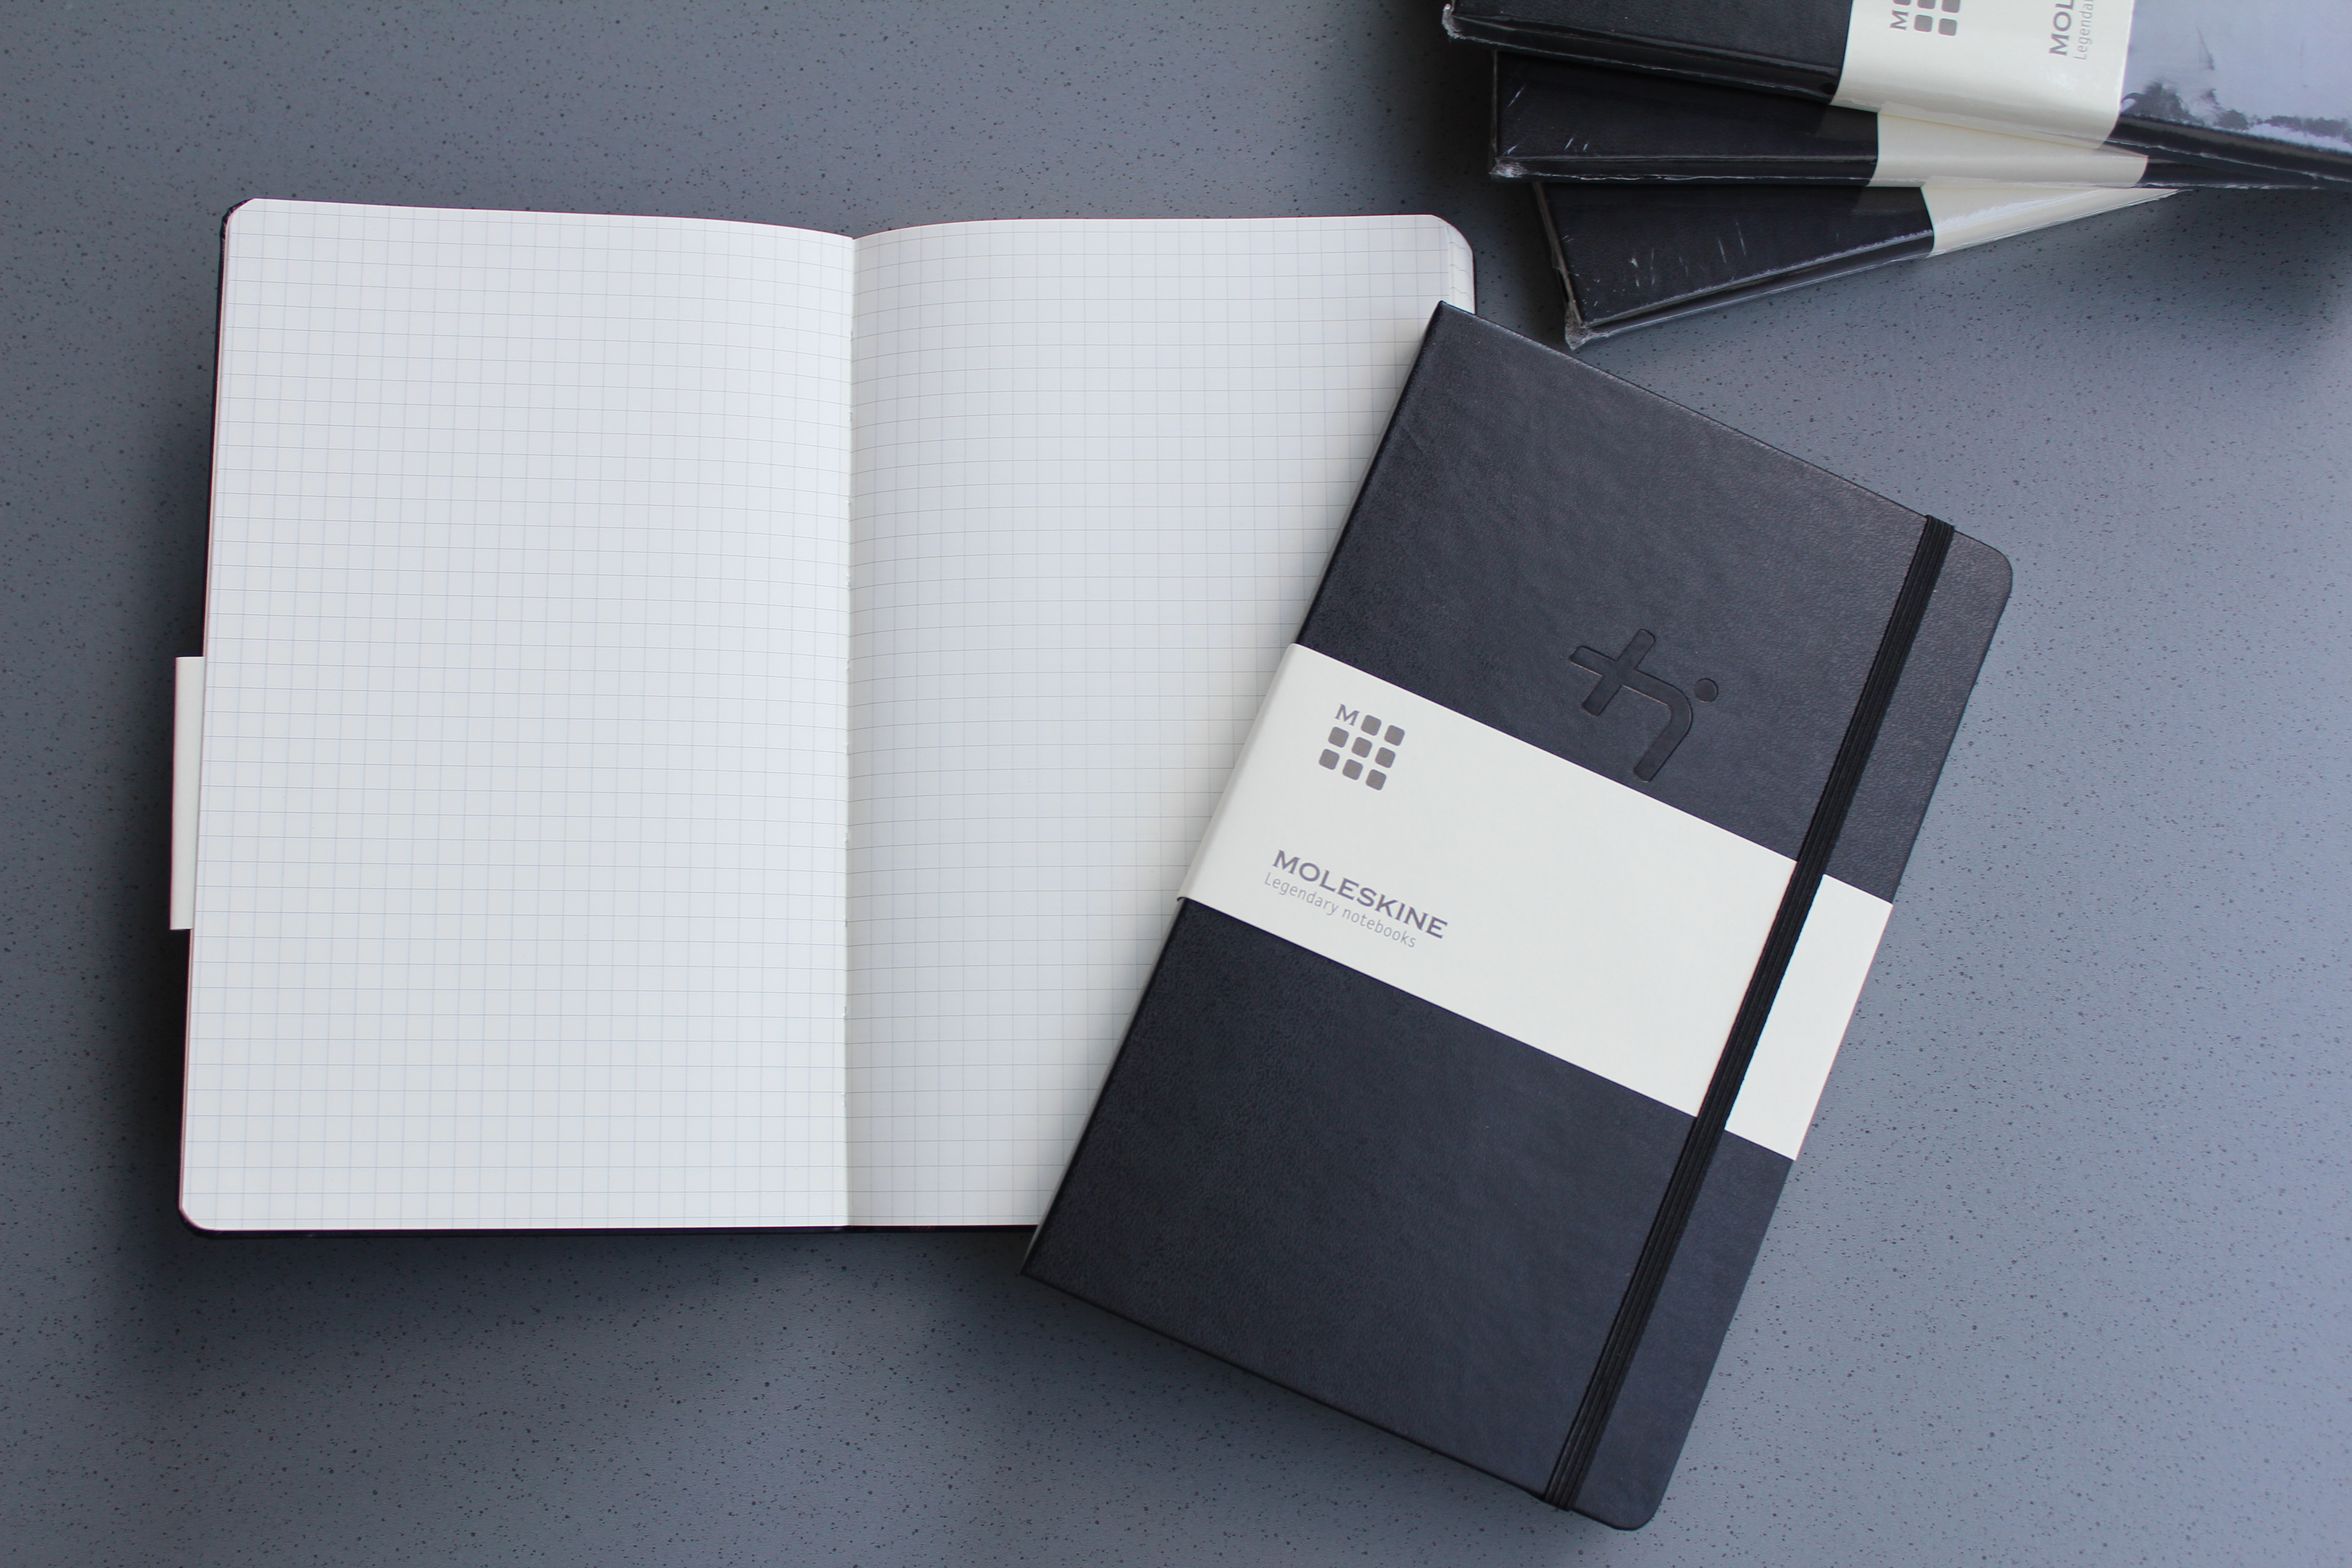 Ein geschlossenes Notizbuch mit schwarzem Einband liegt auf einem aufgeschlagenen Notizbuch